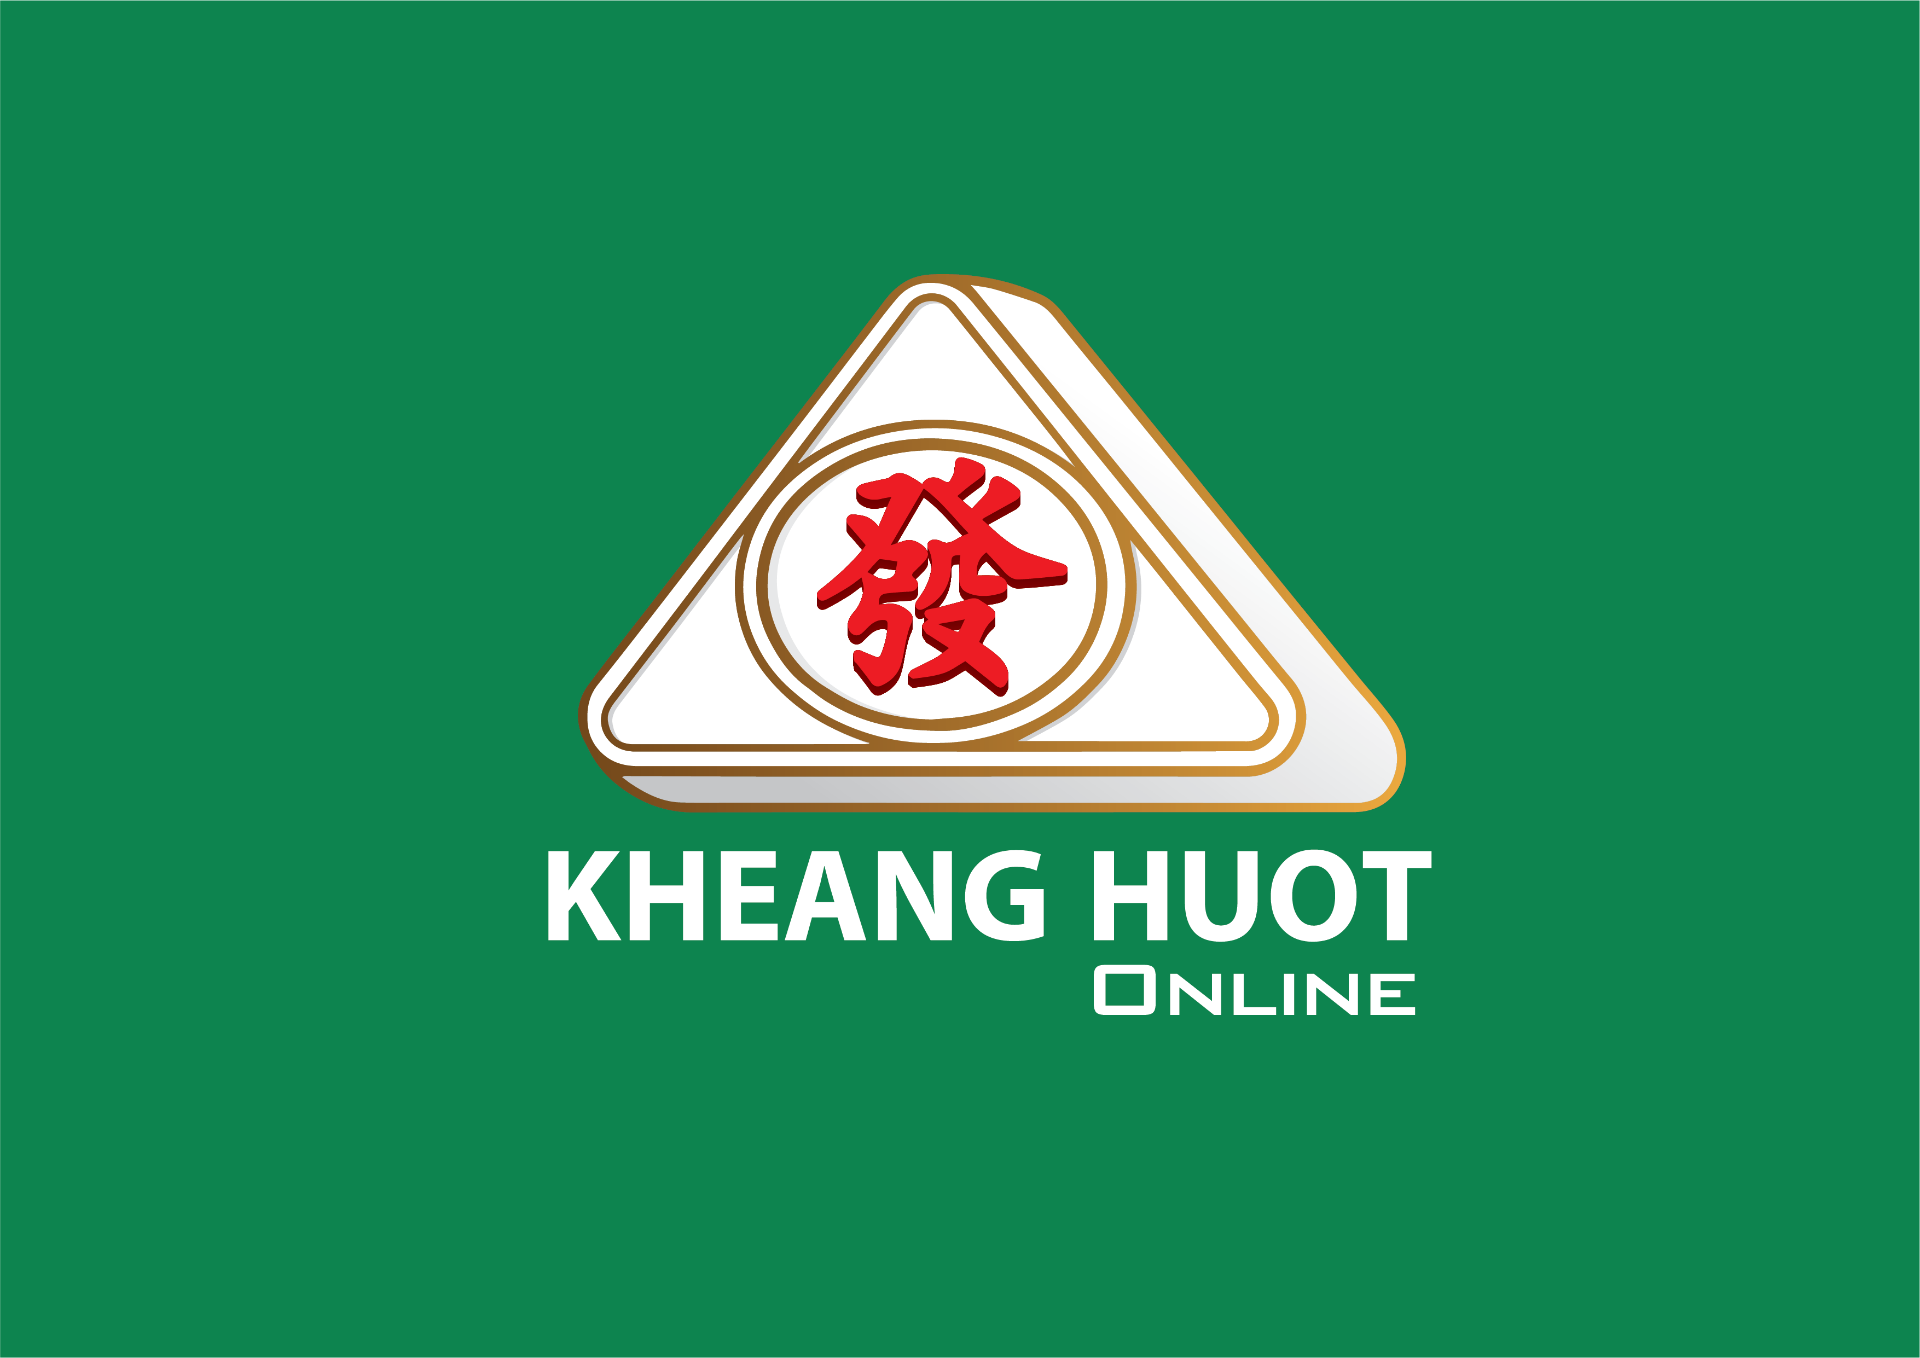 Kheang Huot Online Shopping